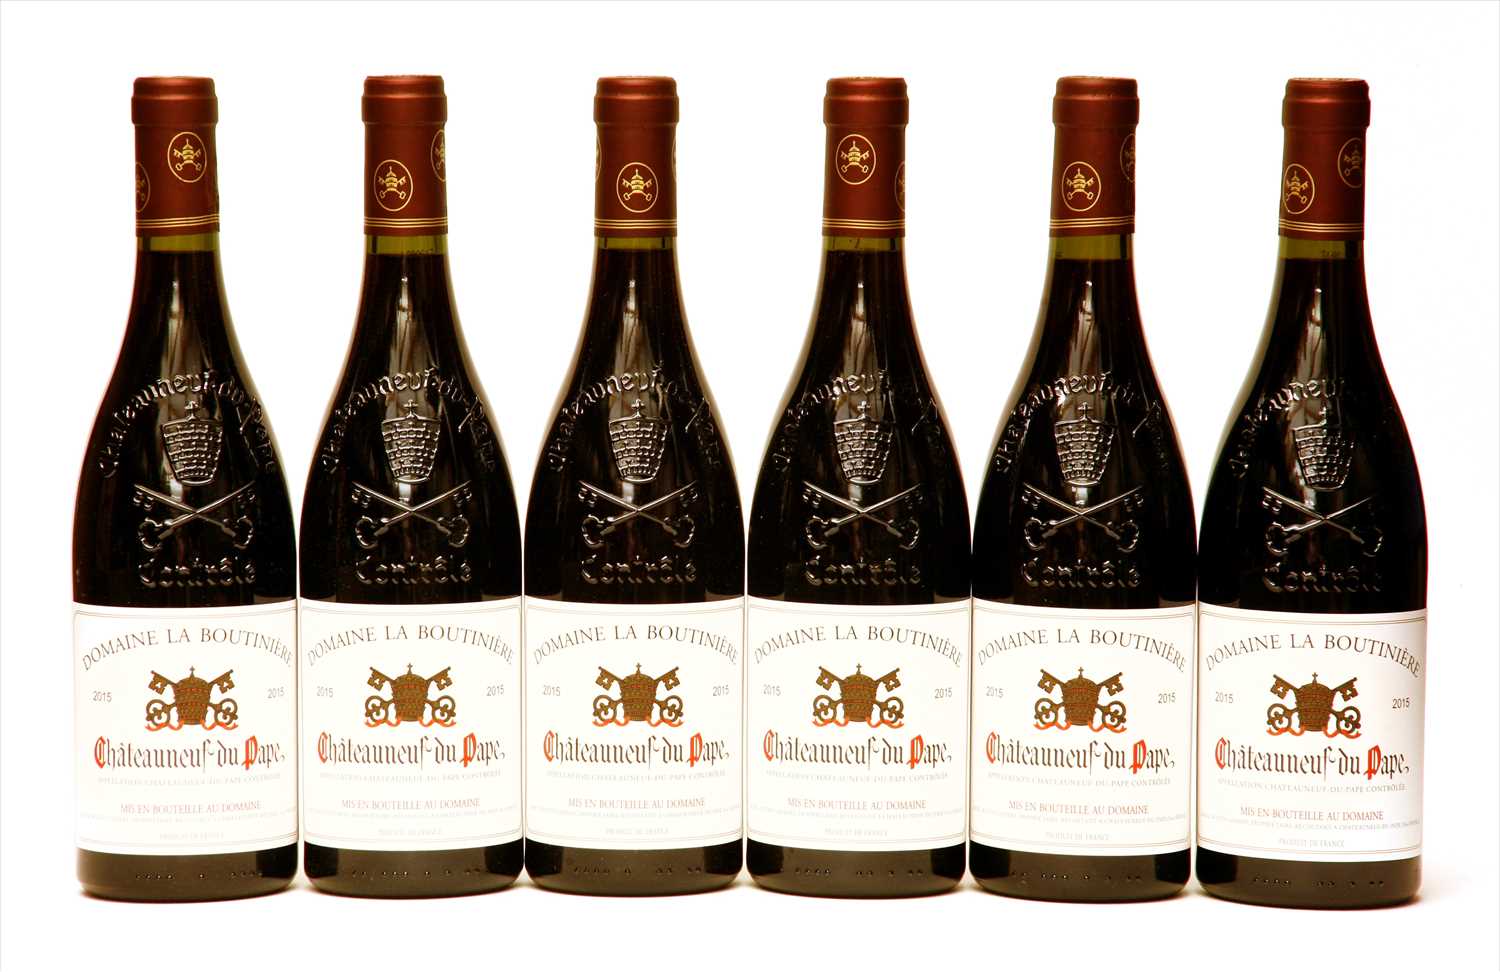 Lot 195 - Domaine la Boutinière, Châteauneuf-du-Pape, 2015, six bottles (boxed)